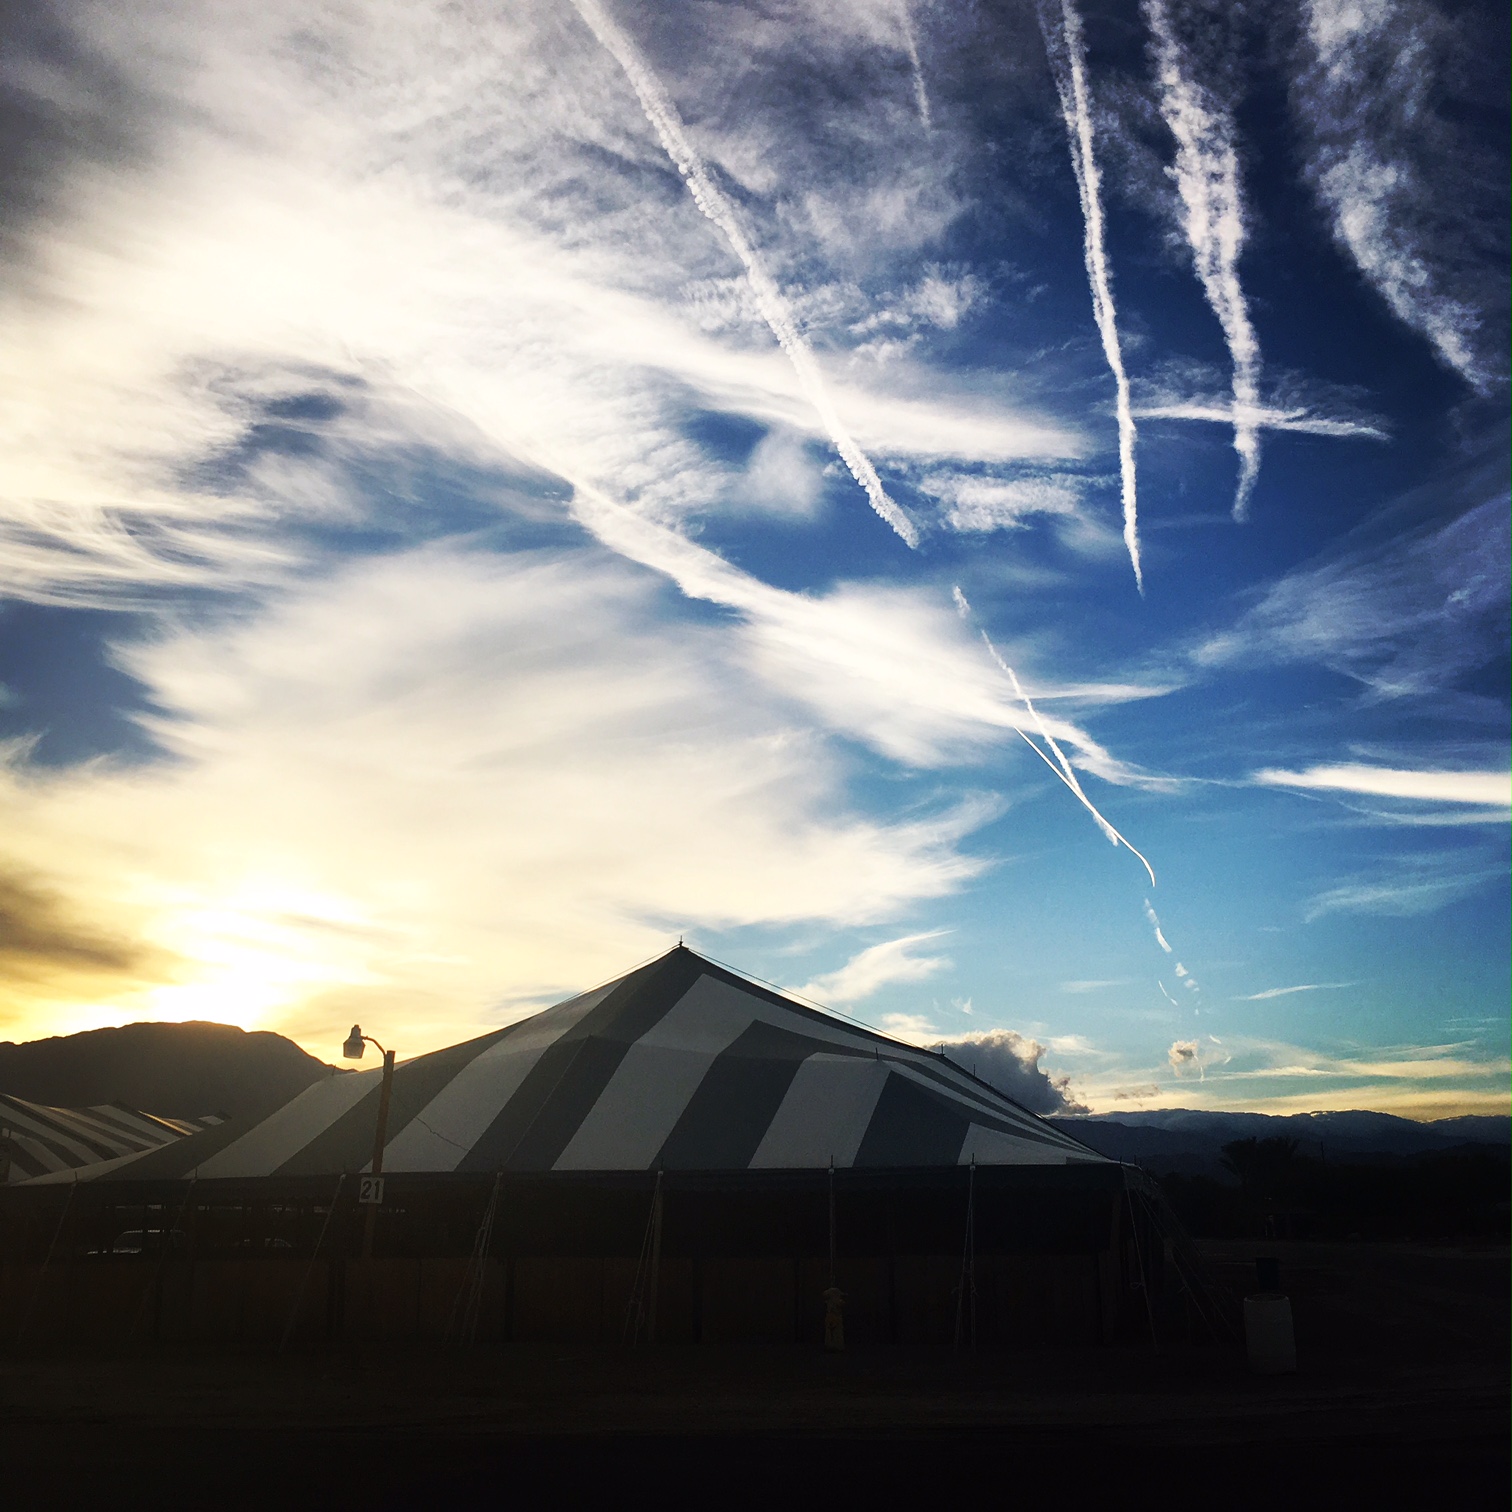 The morning skies at HITS Coachella. PC: Candace Green